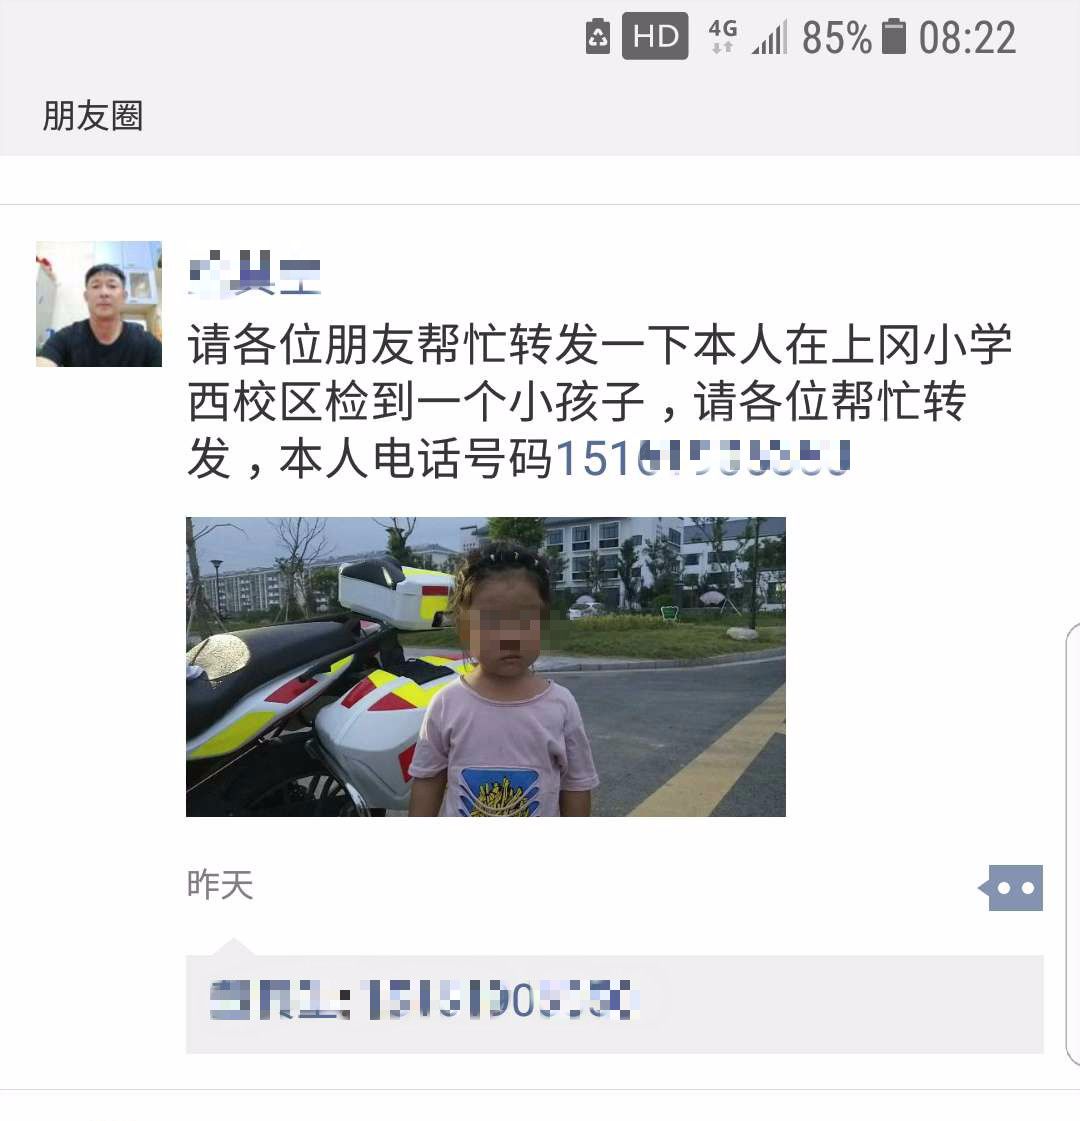 【暖心】五岁女童街头迷路，上冈民警及时帮助找到家人孩子